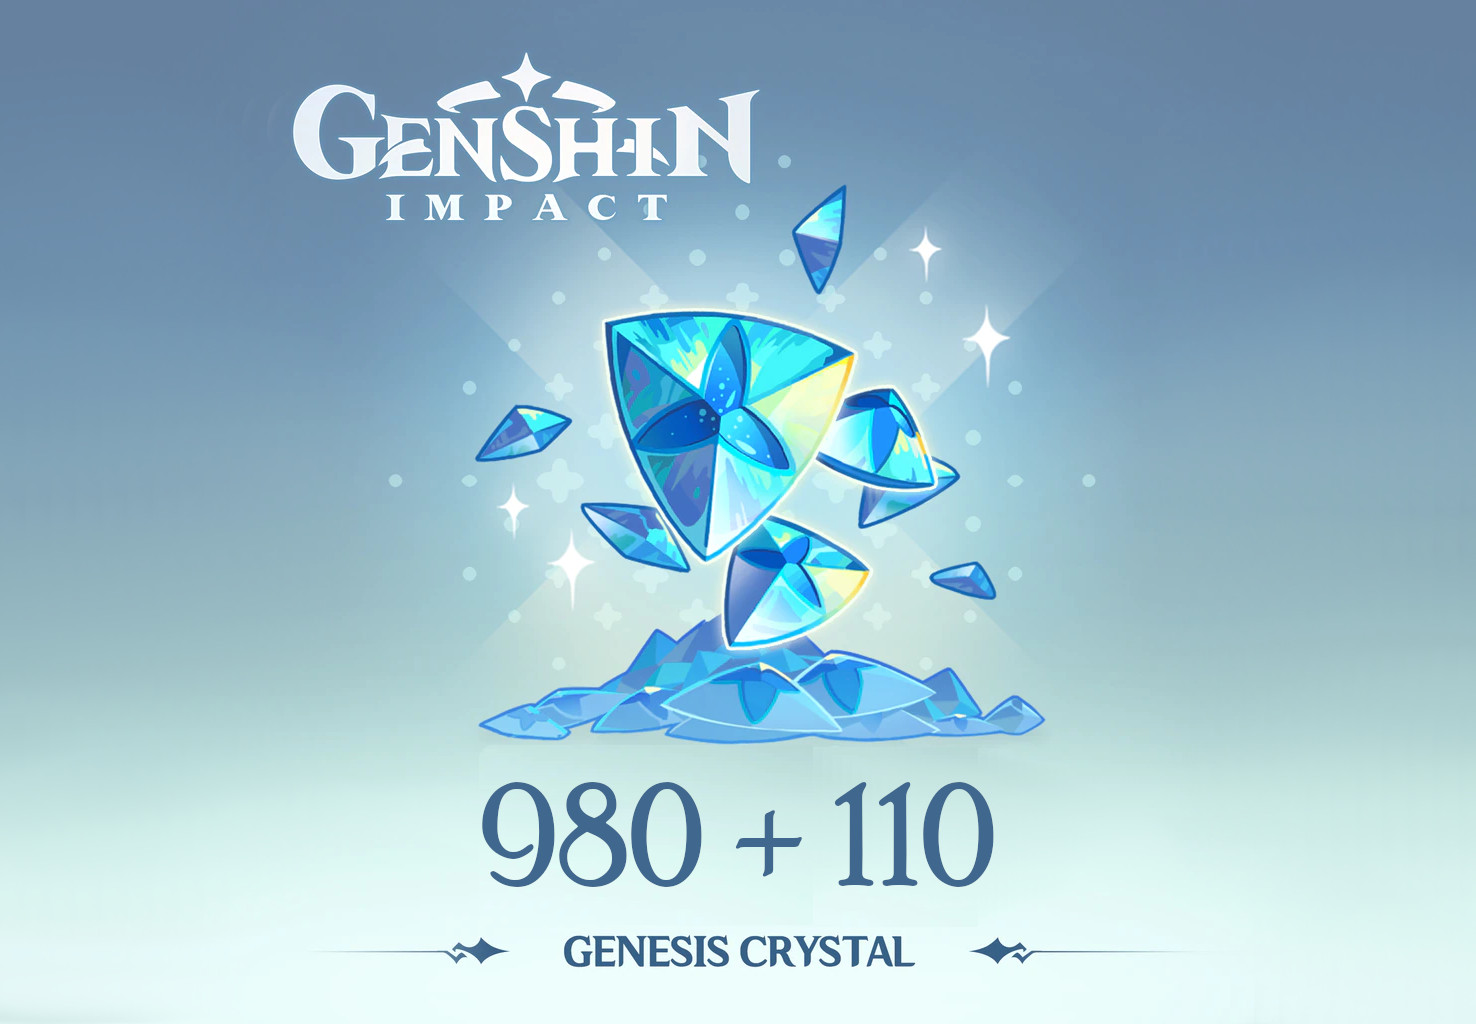 [$ 17.23] Genshin Impact - 980 + 110 Genesis Crystals Reidos Voucher